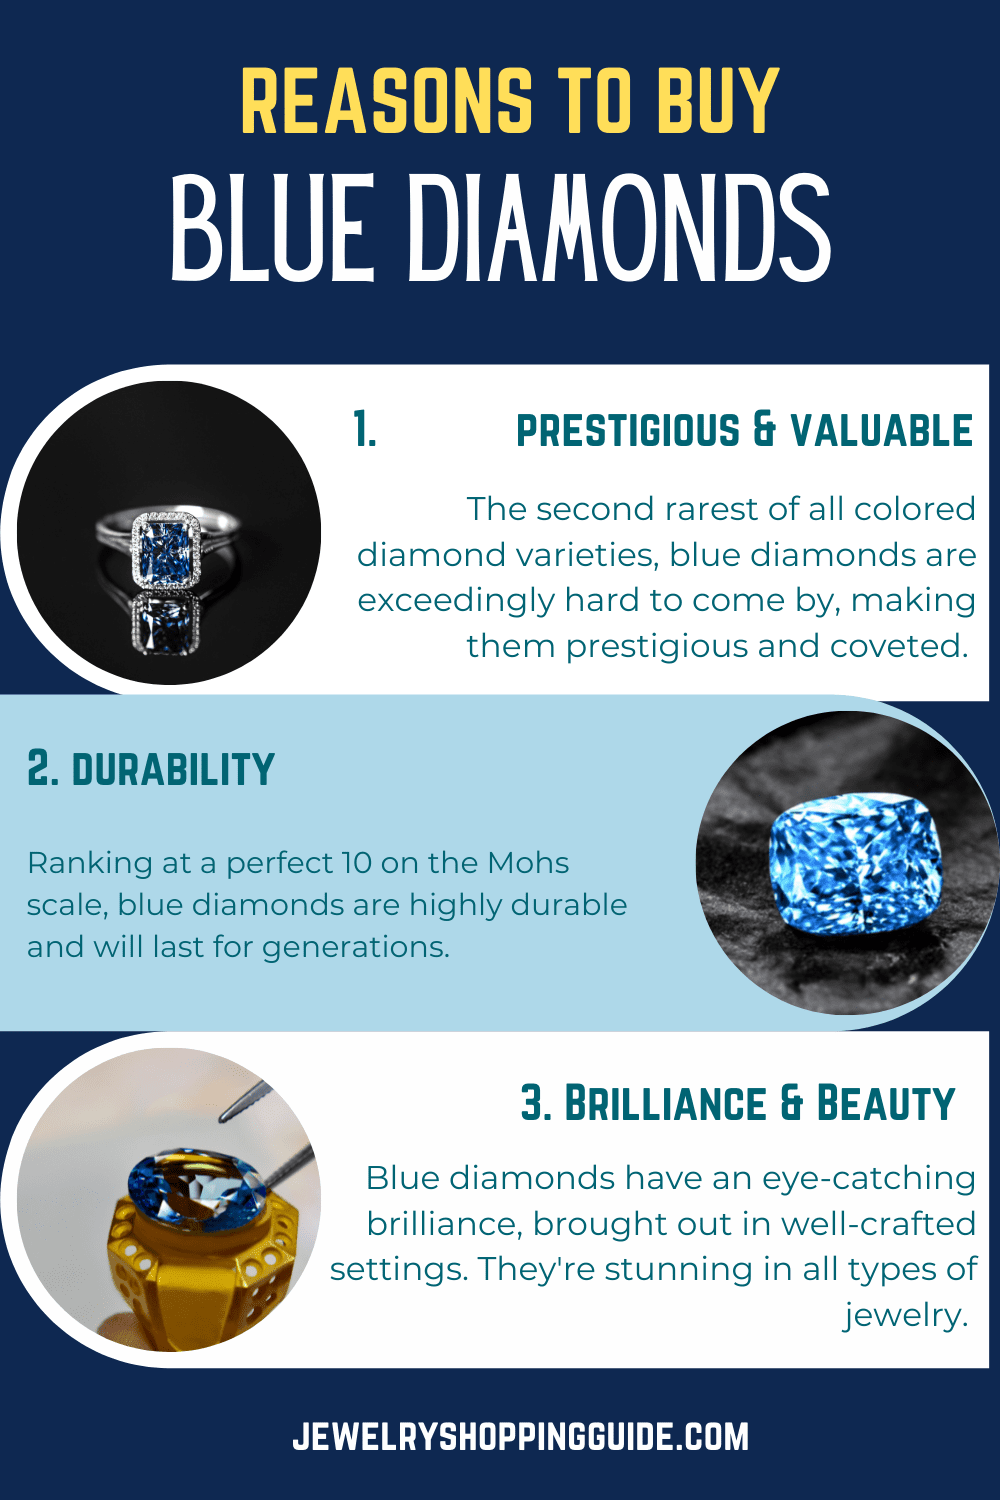 Reasons to buy blue diamonds